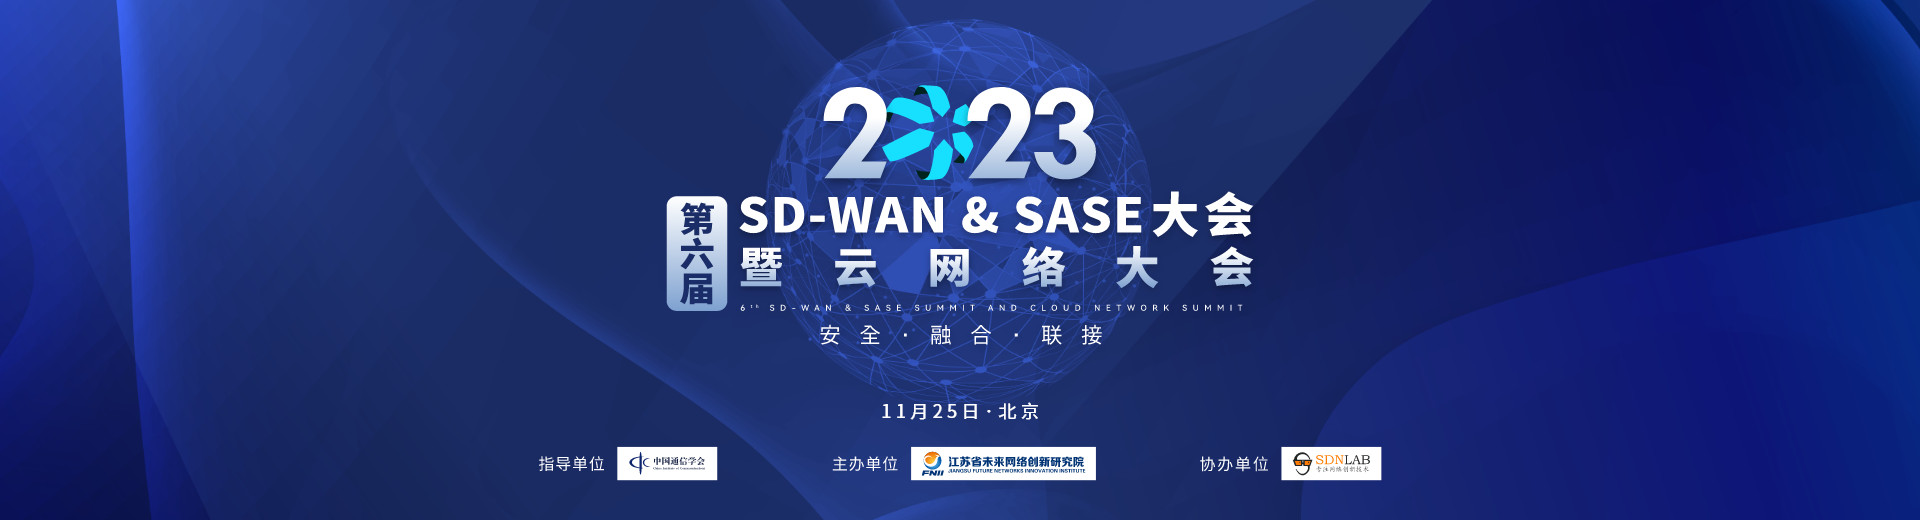 第六届SD-WAN & SASE 大会暨云网络大会